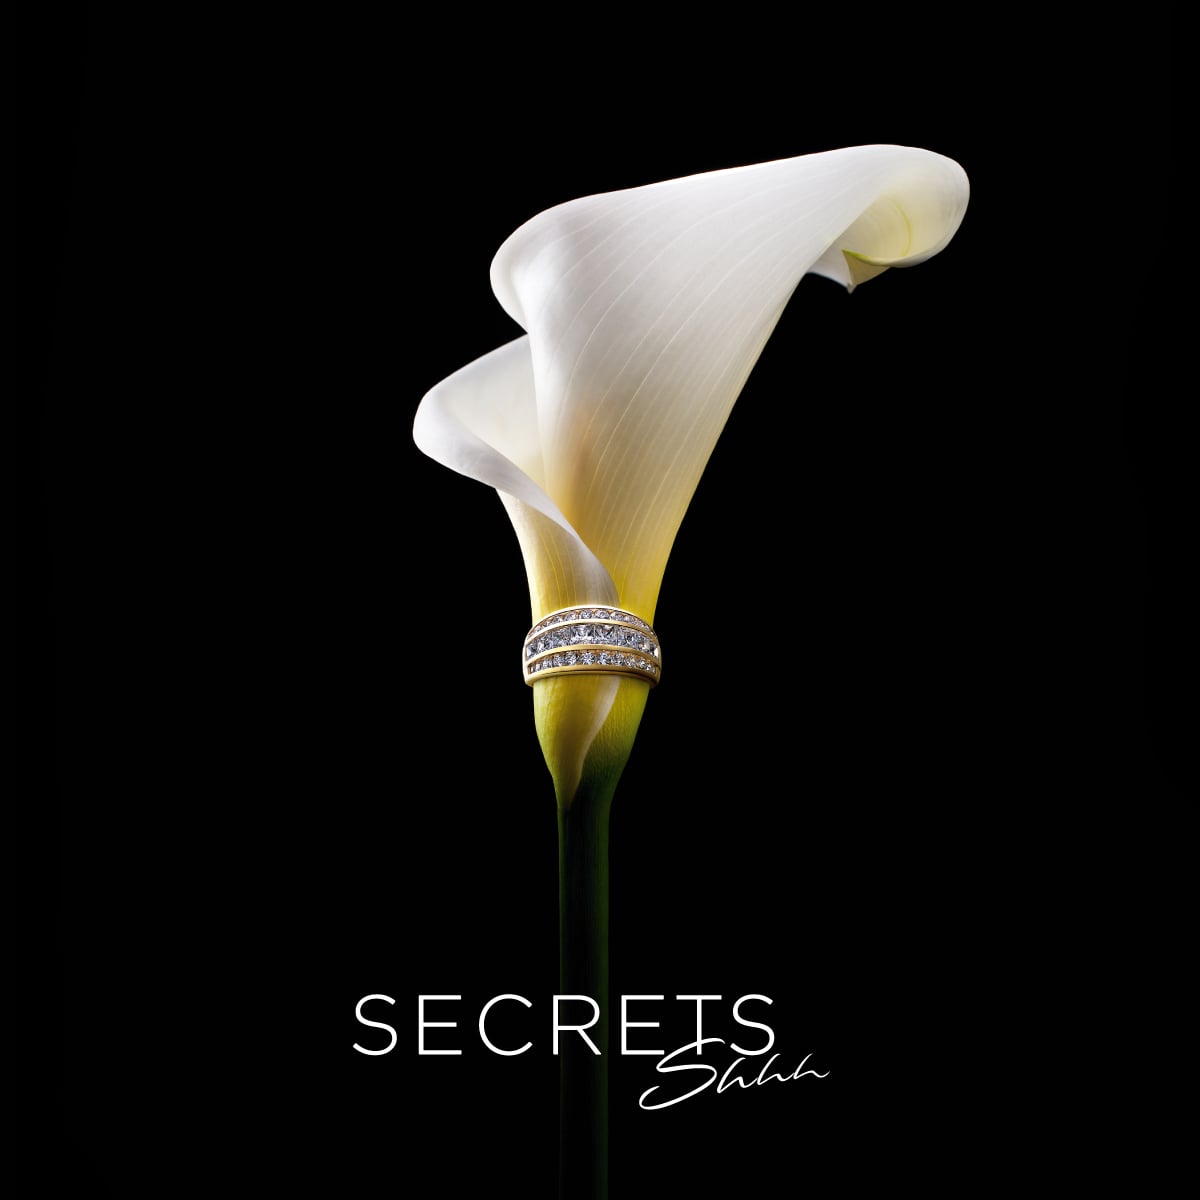 Davidson Branding Retail Secrets Shhh Logo Ring Flower